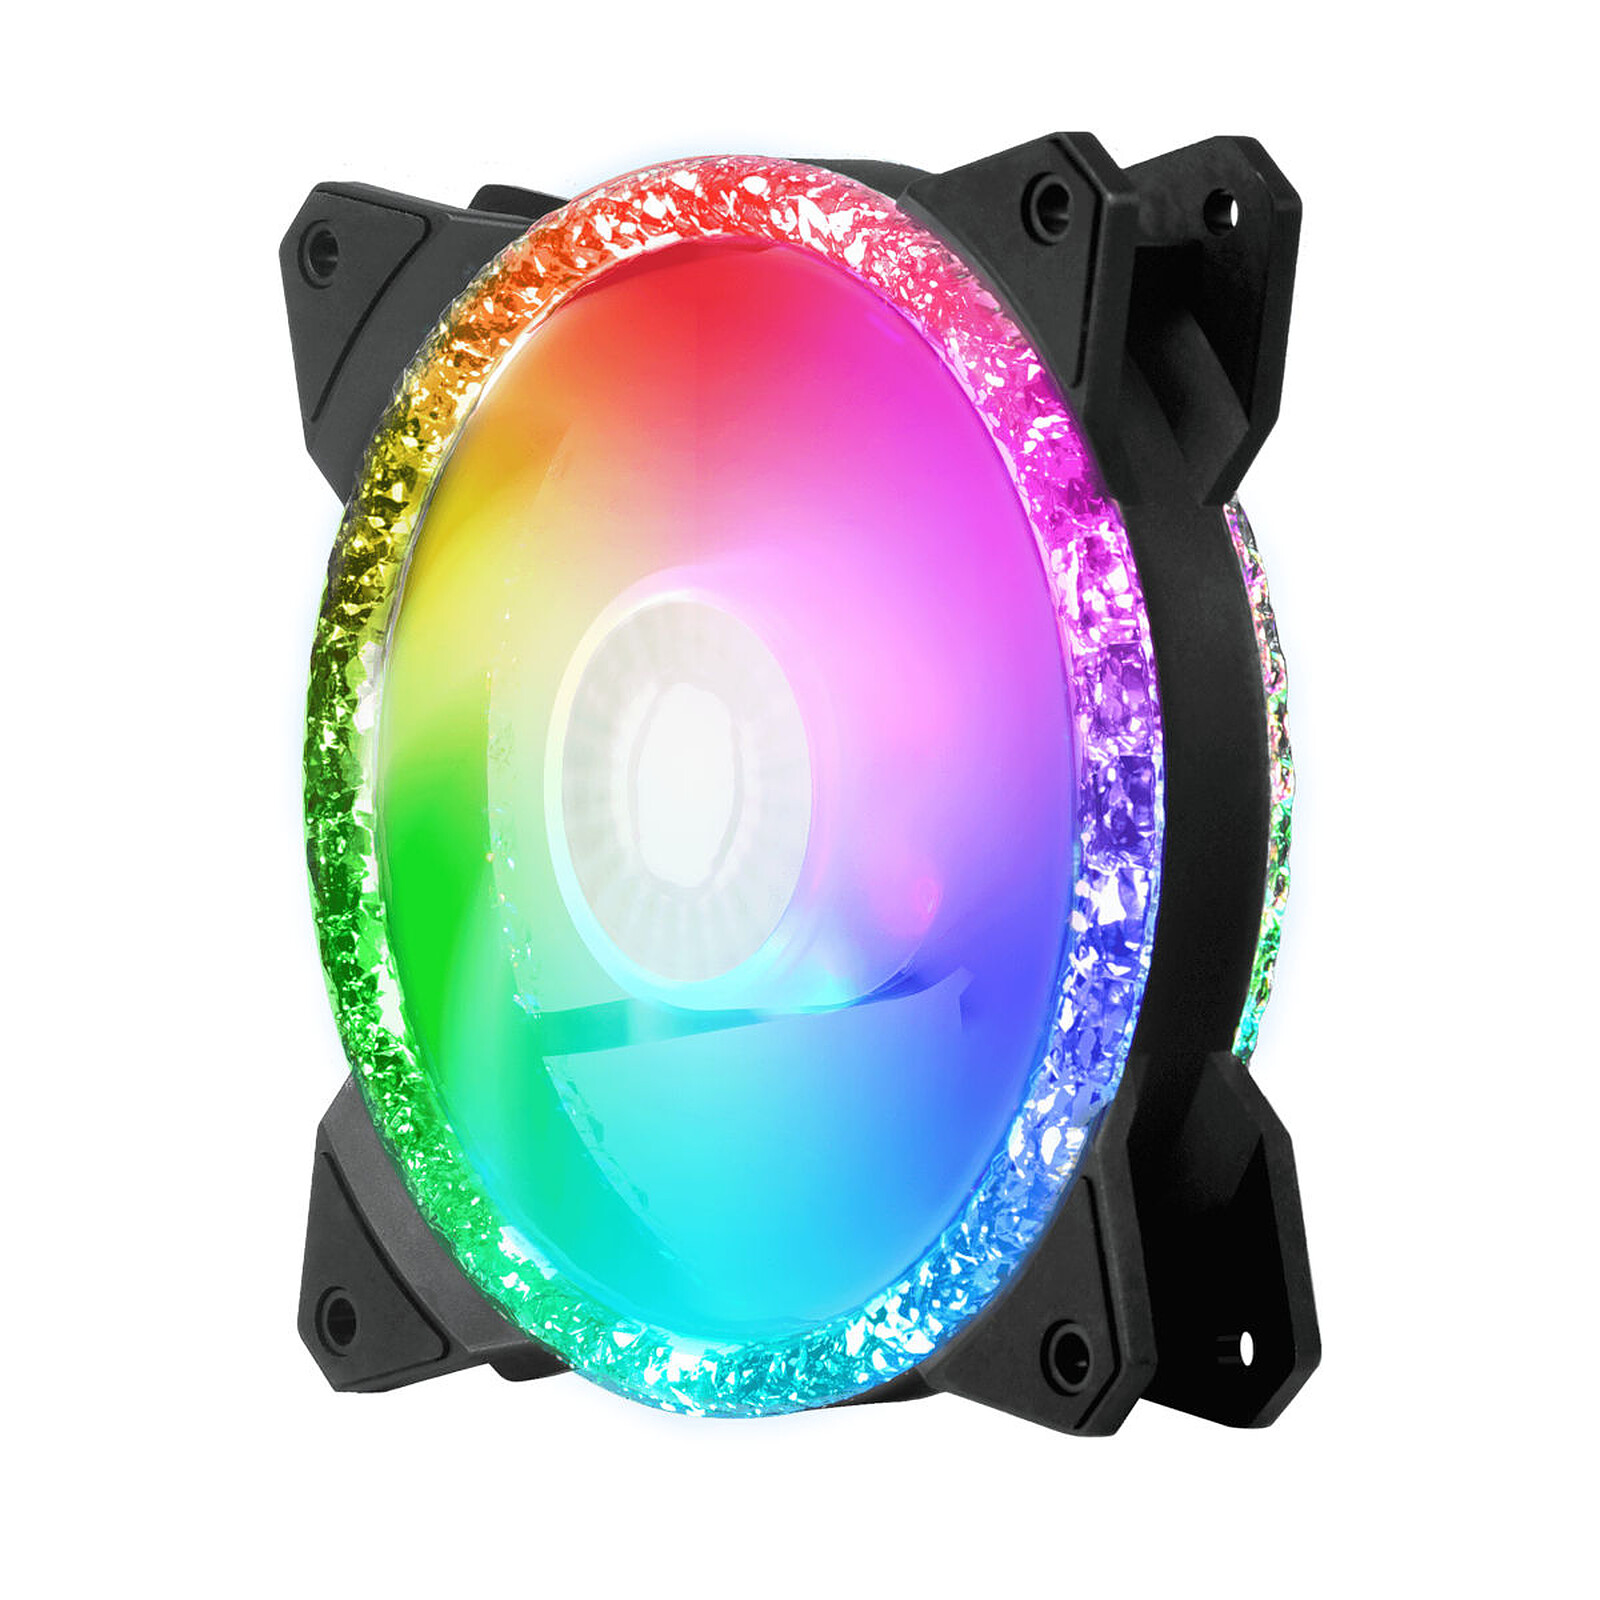 Ventilador Fan Cooler 120mm. Caja Pc Gamer / Luz Led Rainbow